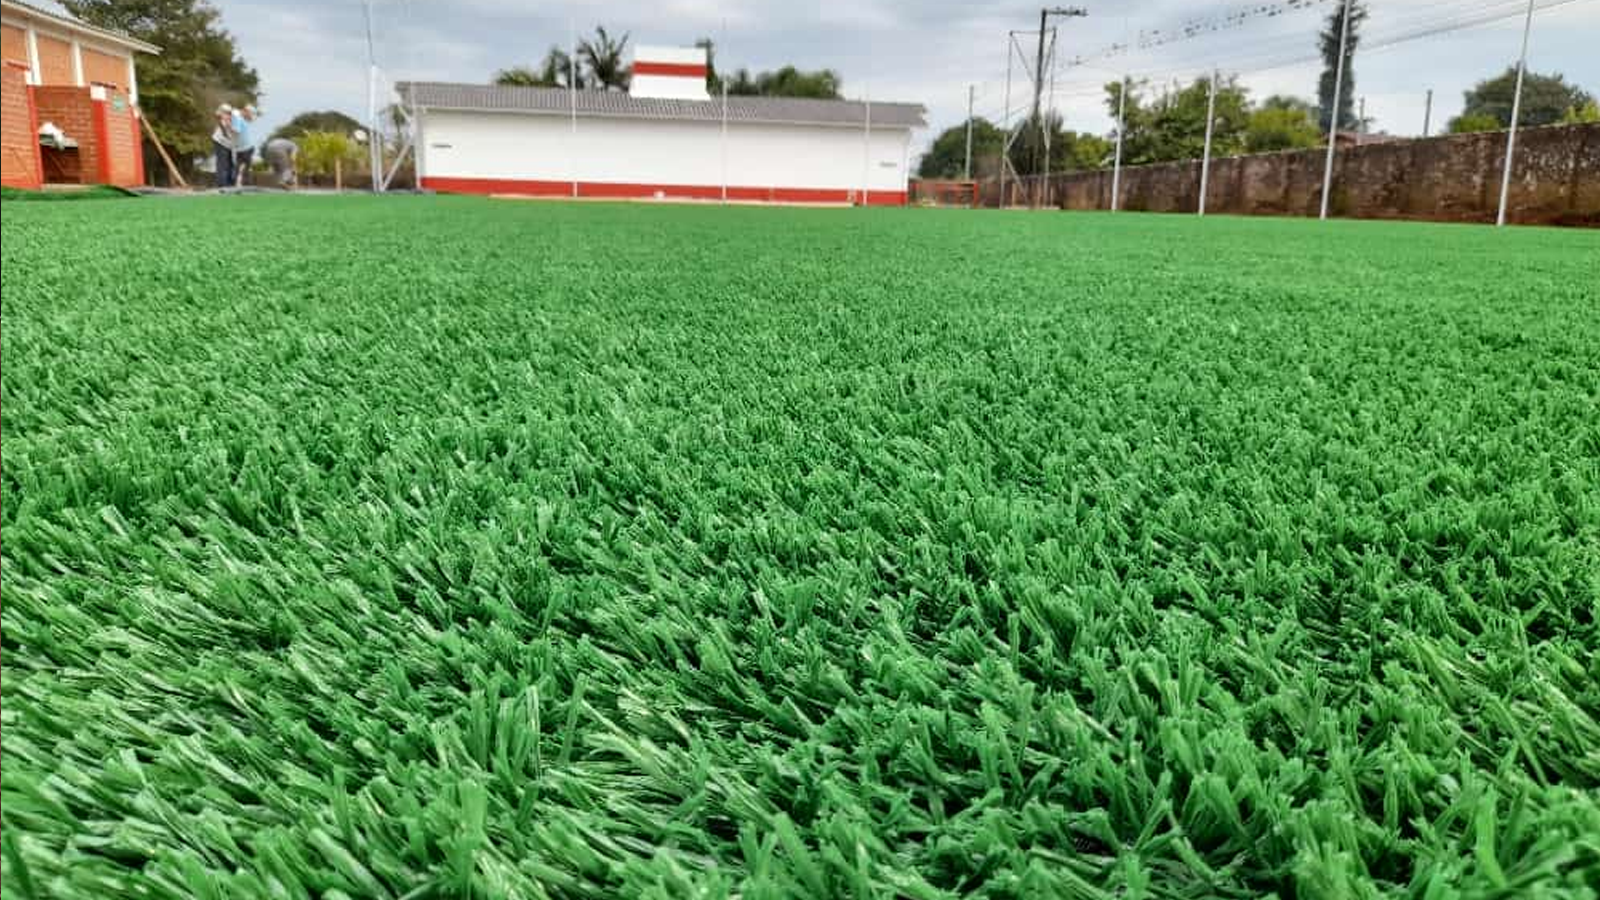 Inicia a colocação de gramado sintético na quadra do Estádio Waldomiro Graeff em Não-Me-Toque